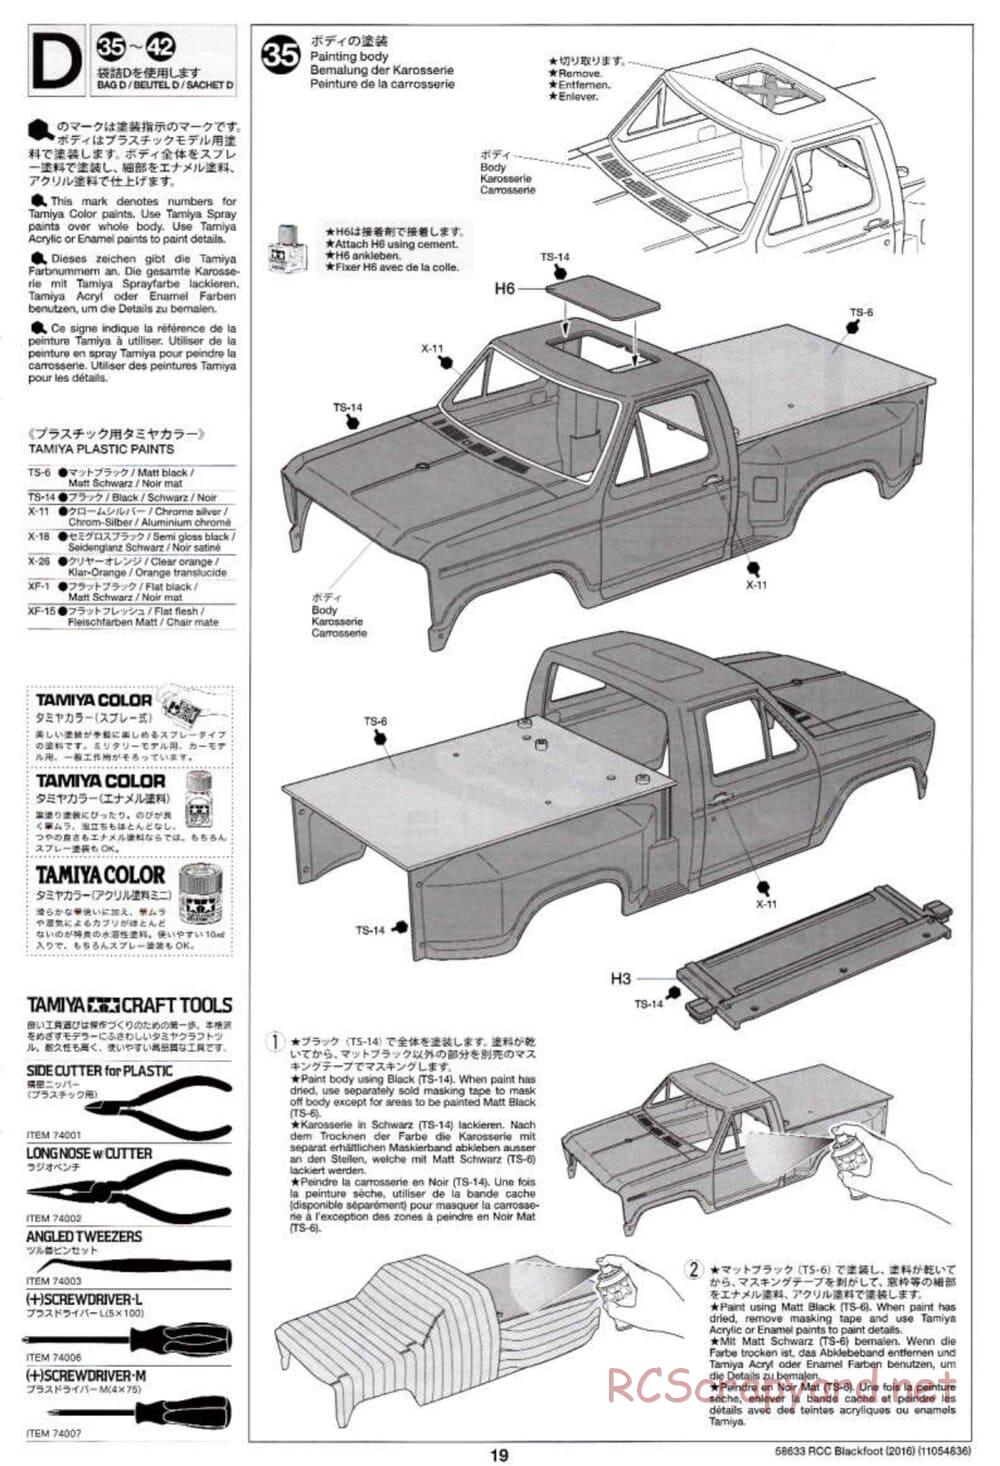 Tamiya - Blackfoot 2016 - ORV Chassis - Manual - Page 19